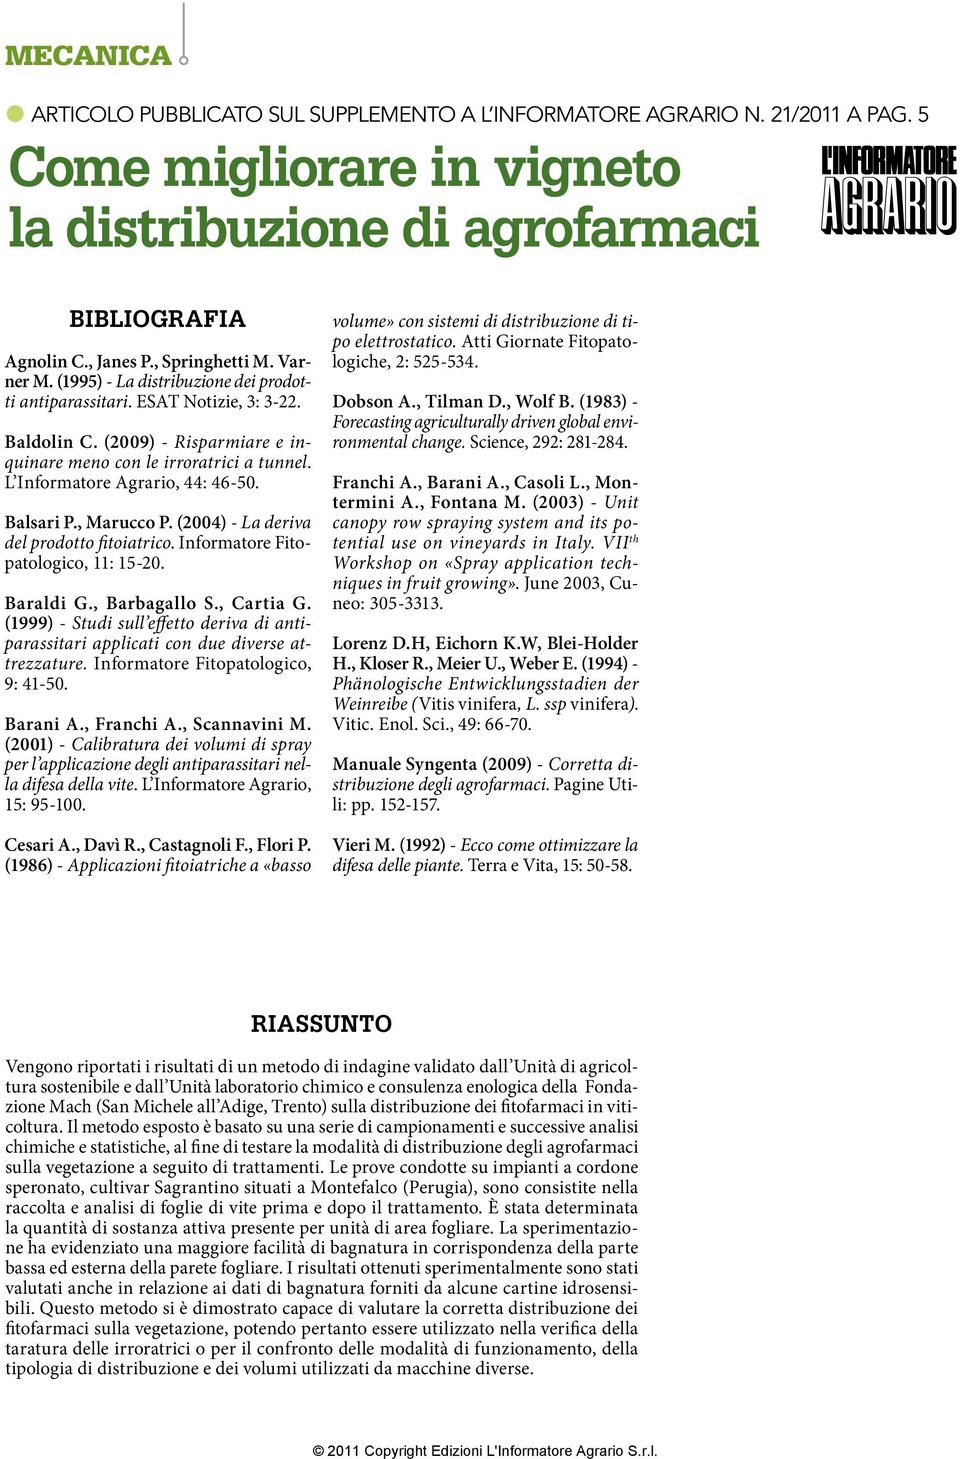 Balsari P., Marucco P. (4) - La deriva del prodotto fitoiatrico. Informatore Fitopatologico, 11: 1-. Baraldi G., Barbagallo S., Cartia G.